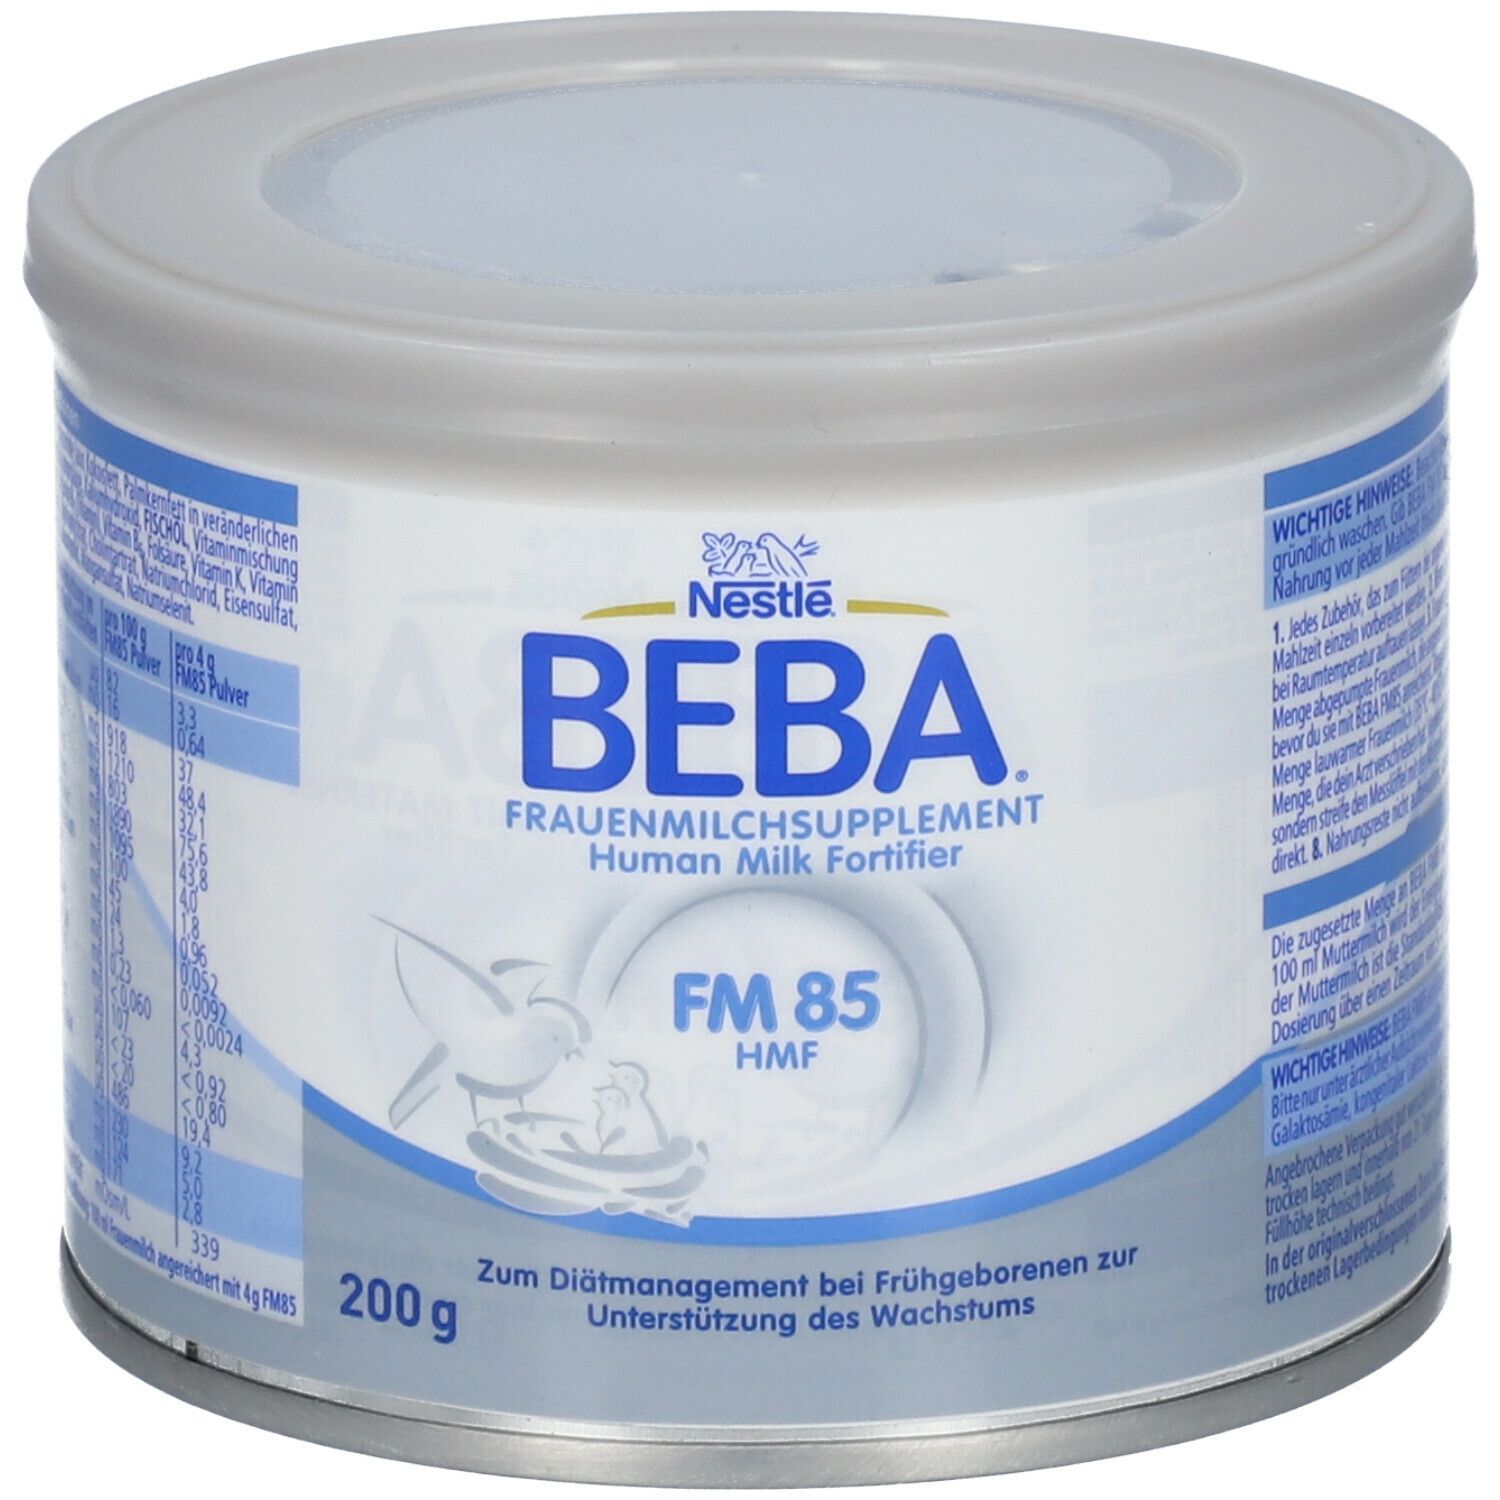 Nestlé BEBA® Frauenmilchsupplement FM 85 von Geburt an nach Anweisung des Arztes